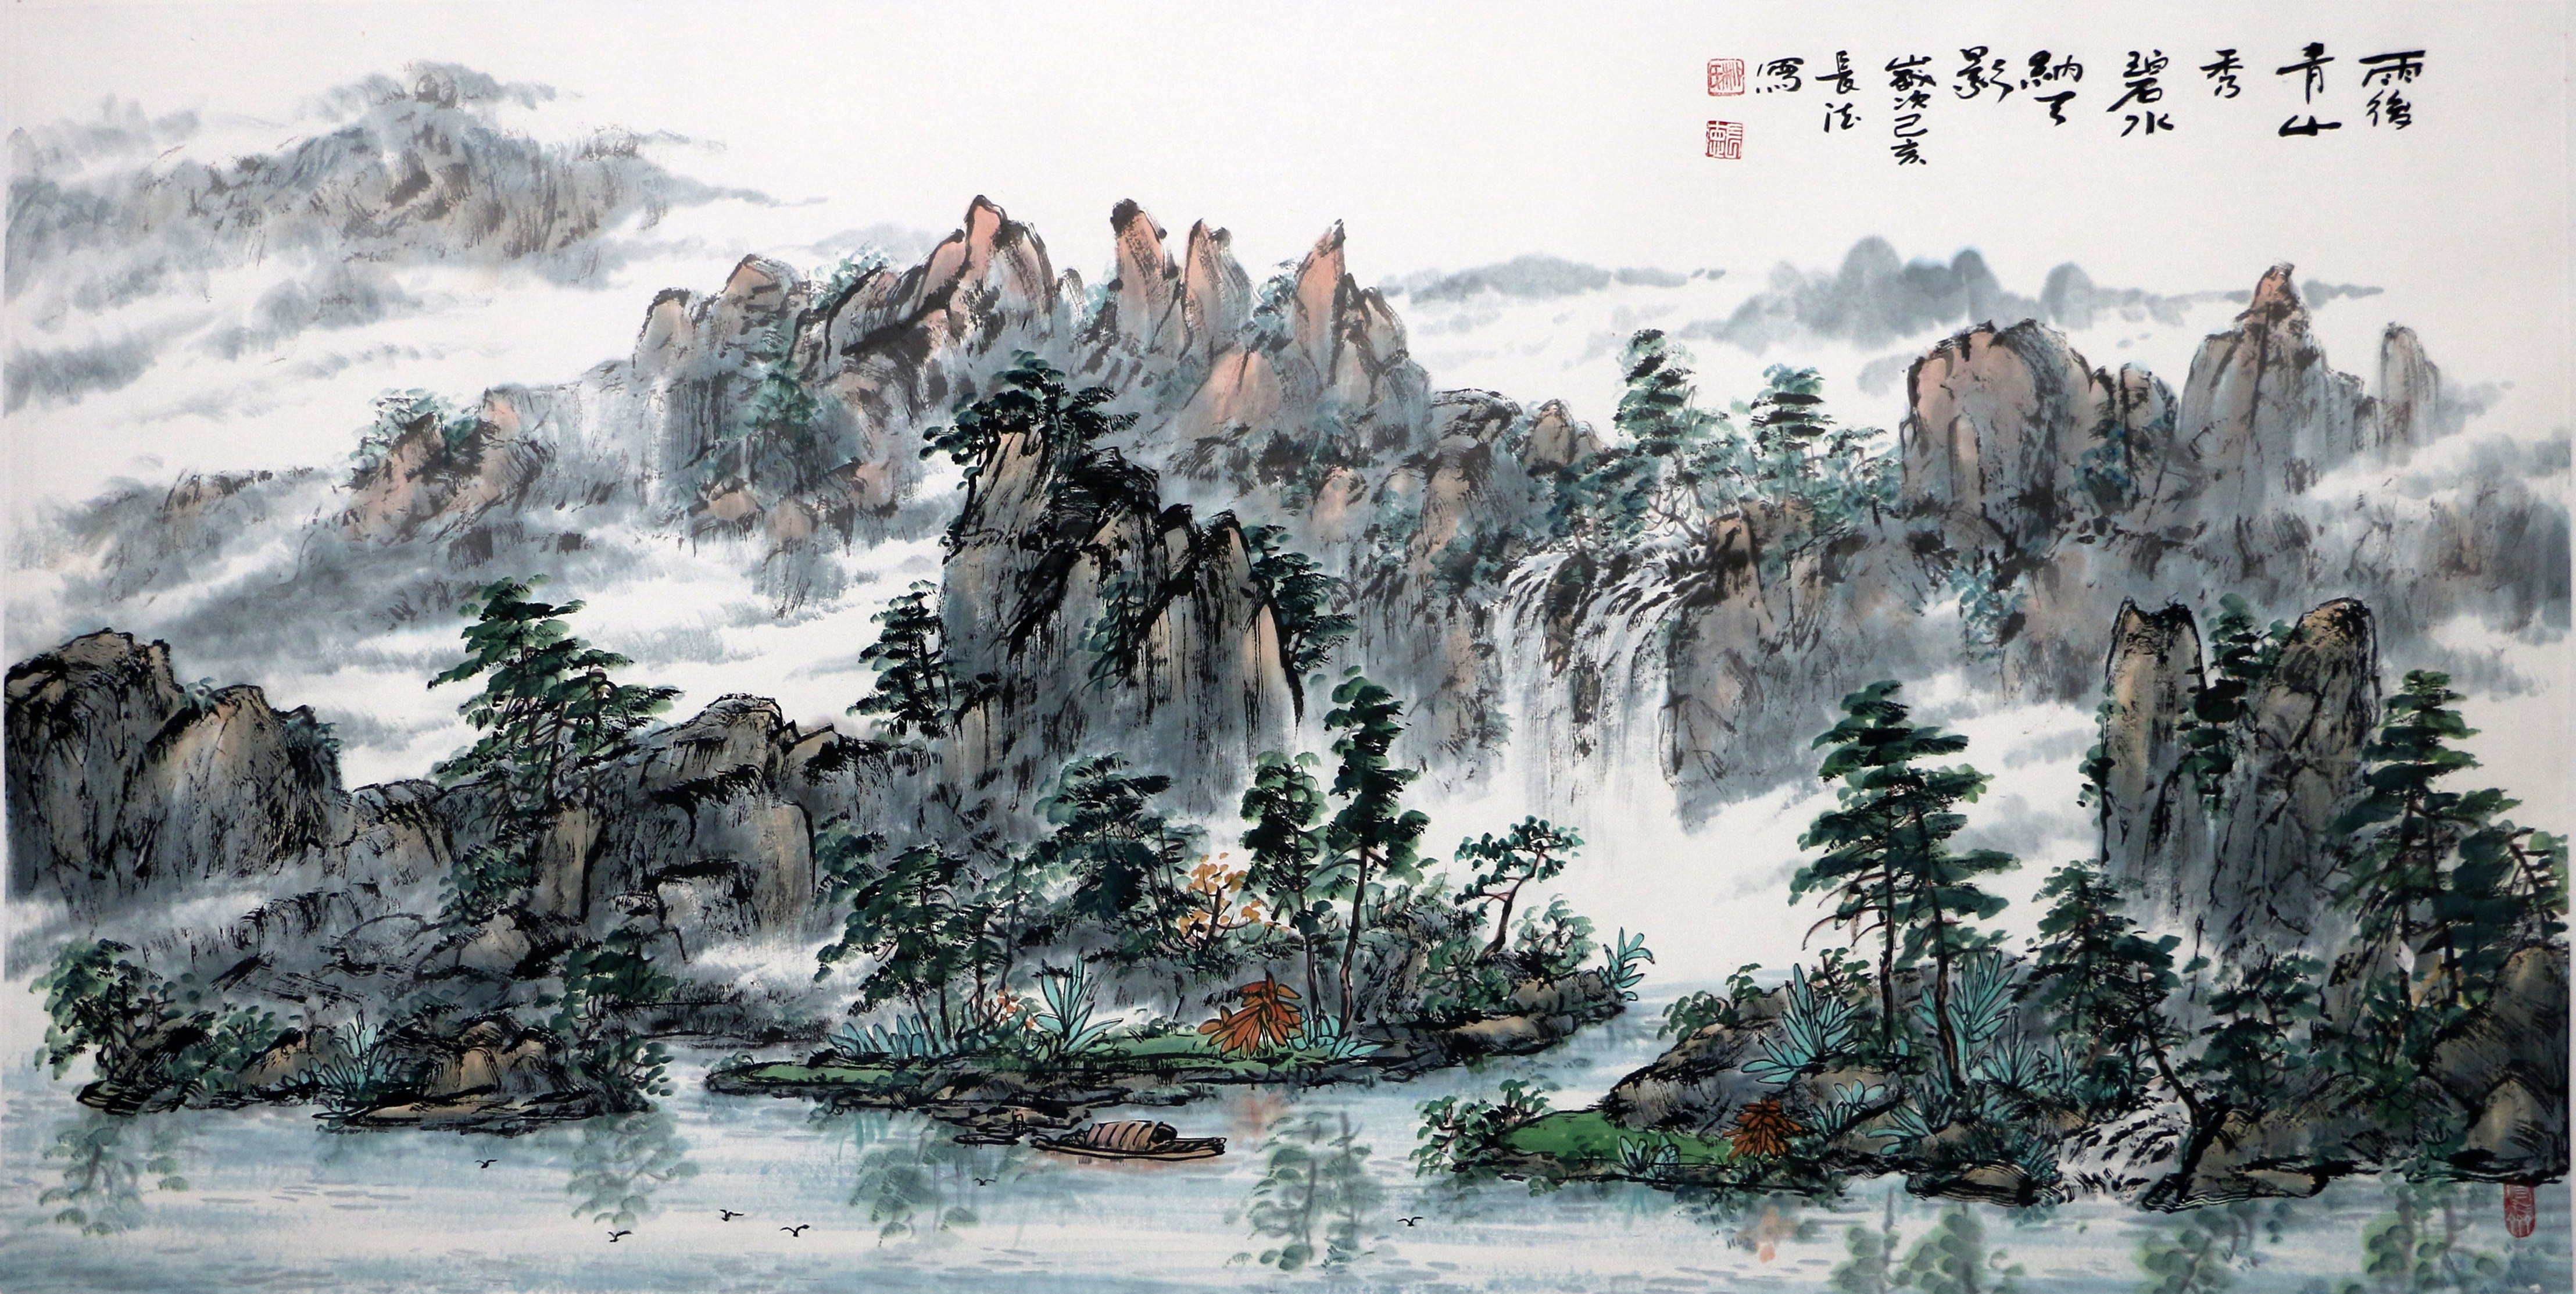 京海墨韵 | 柳长德的山水画,把生活升华到诗一样的艺术美